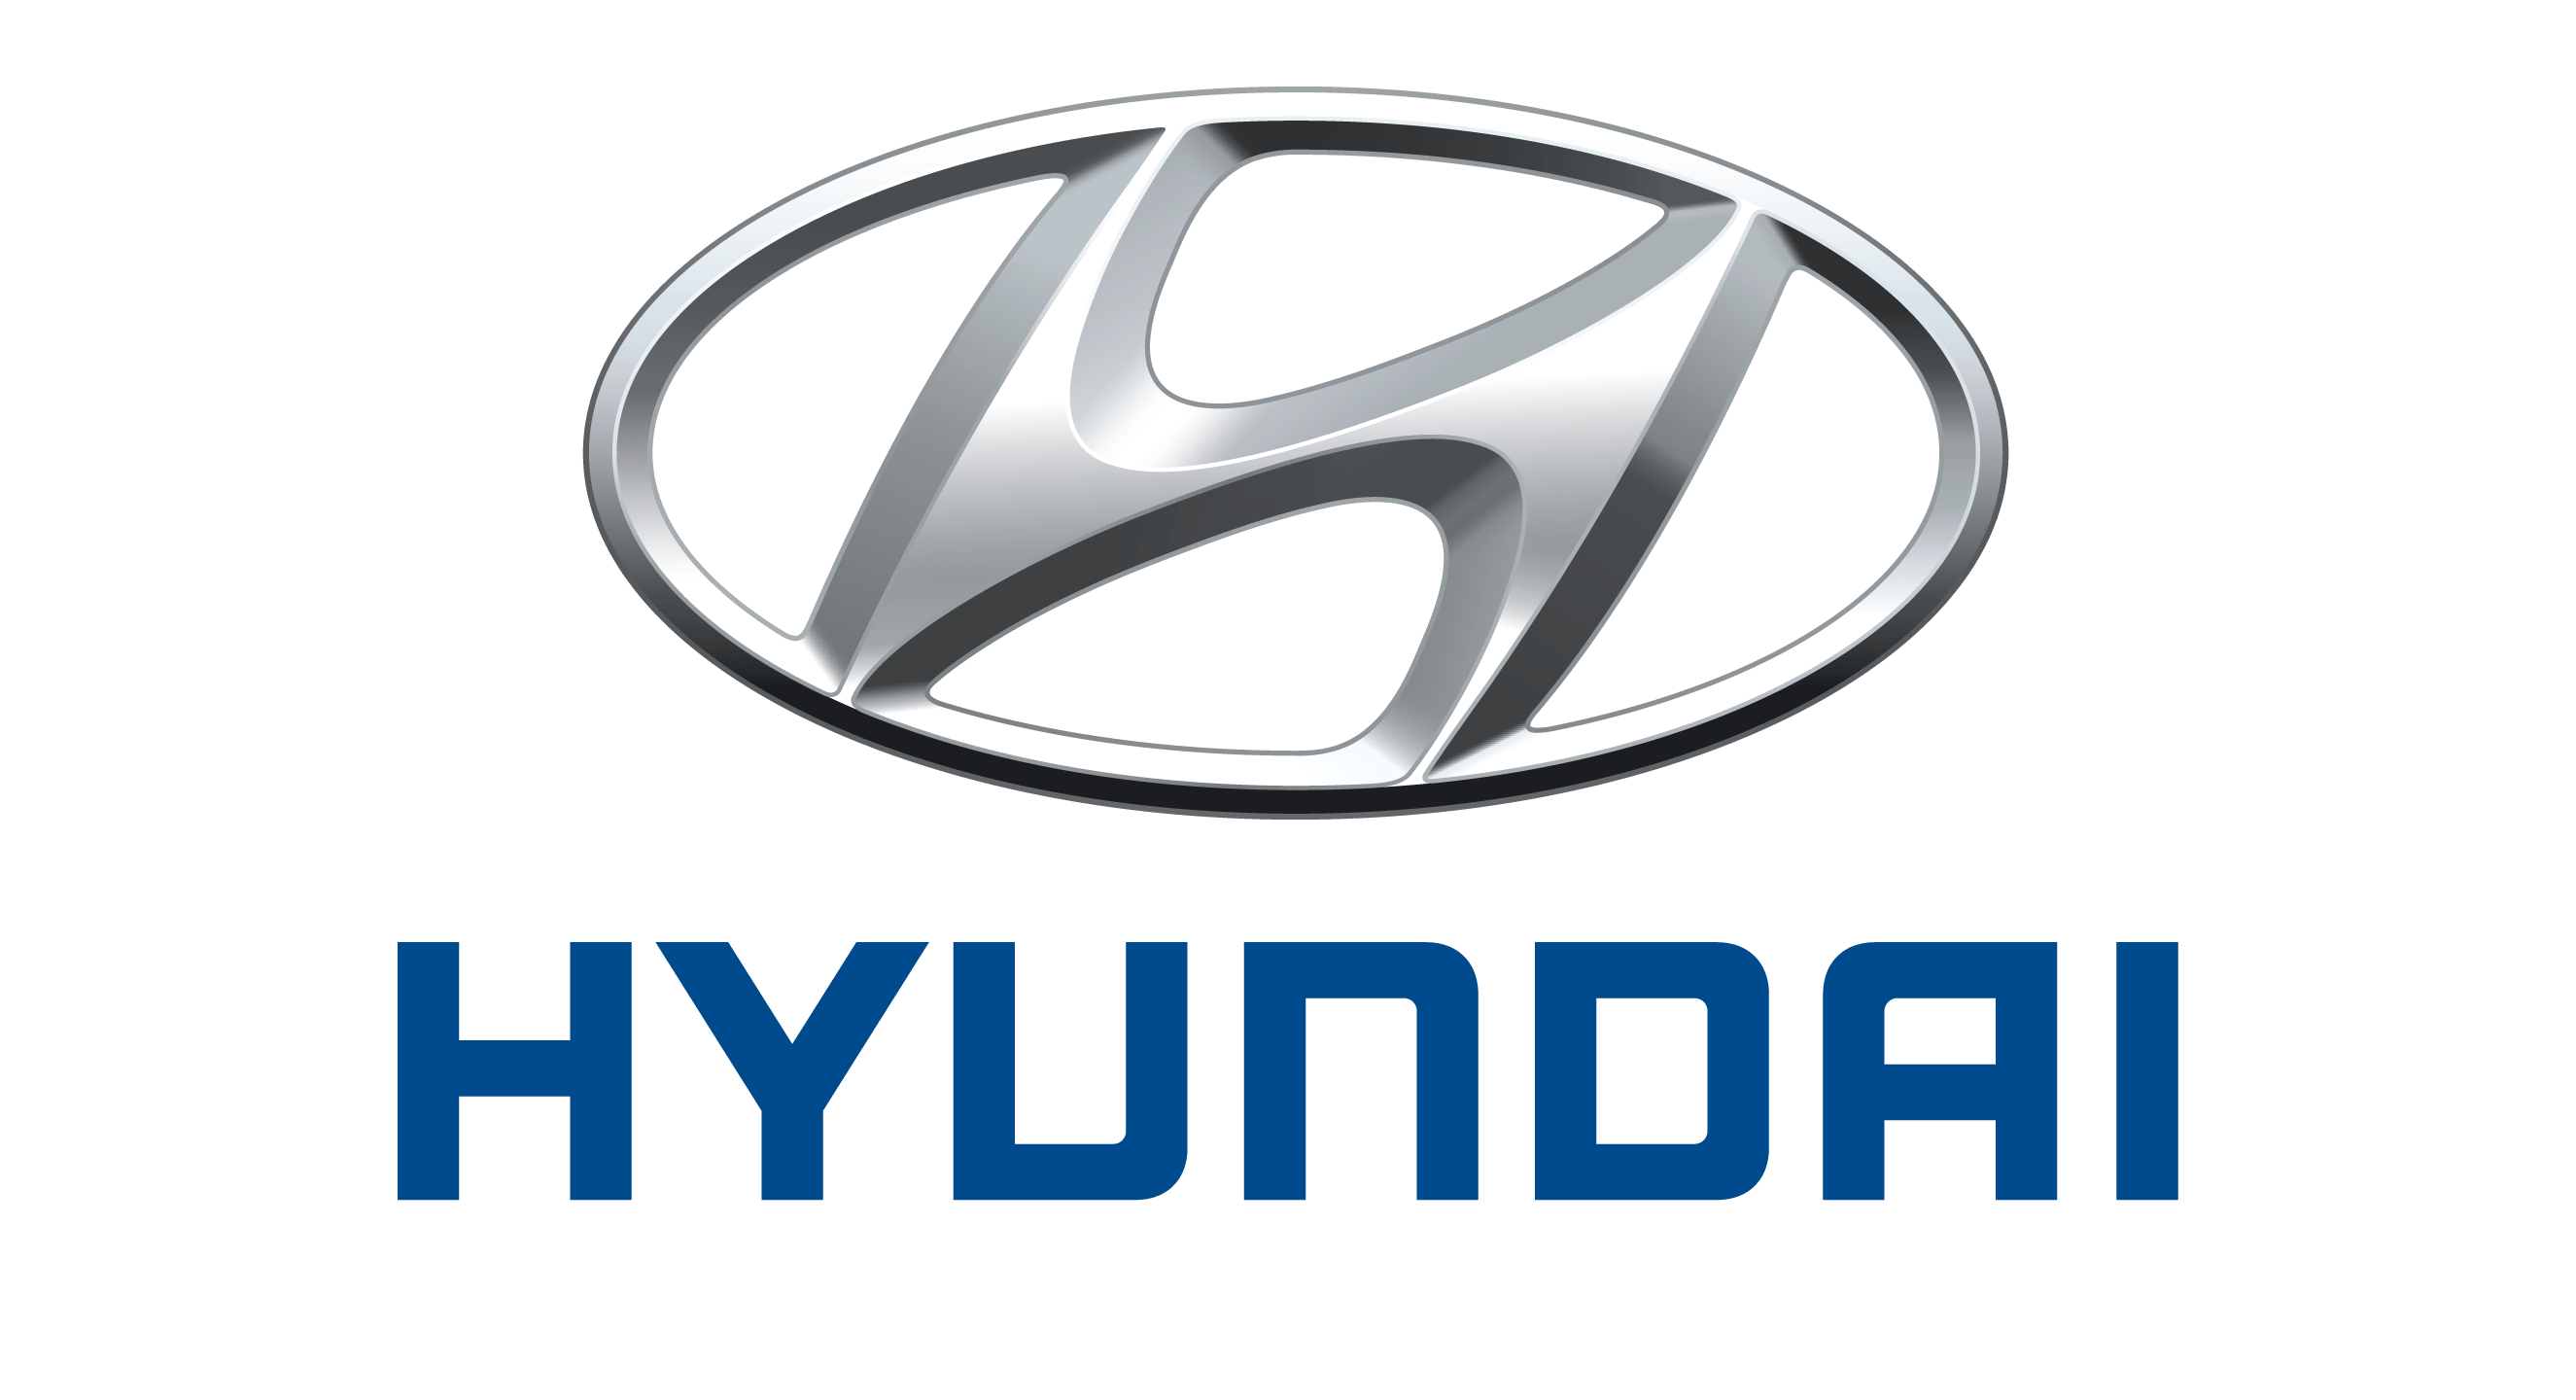 logo xe hyundai moi nhat - Toyota Vios: khuyến mãi và giá xe mới nhất [hienthithang]/[hienthinam]